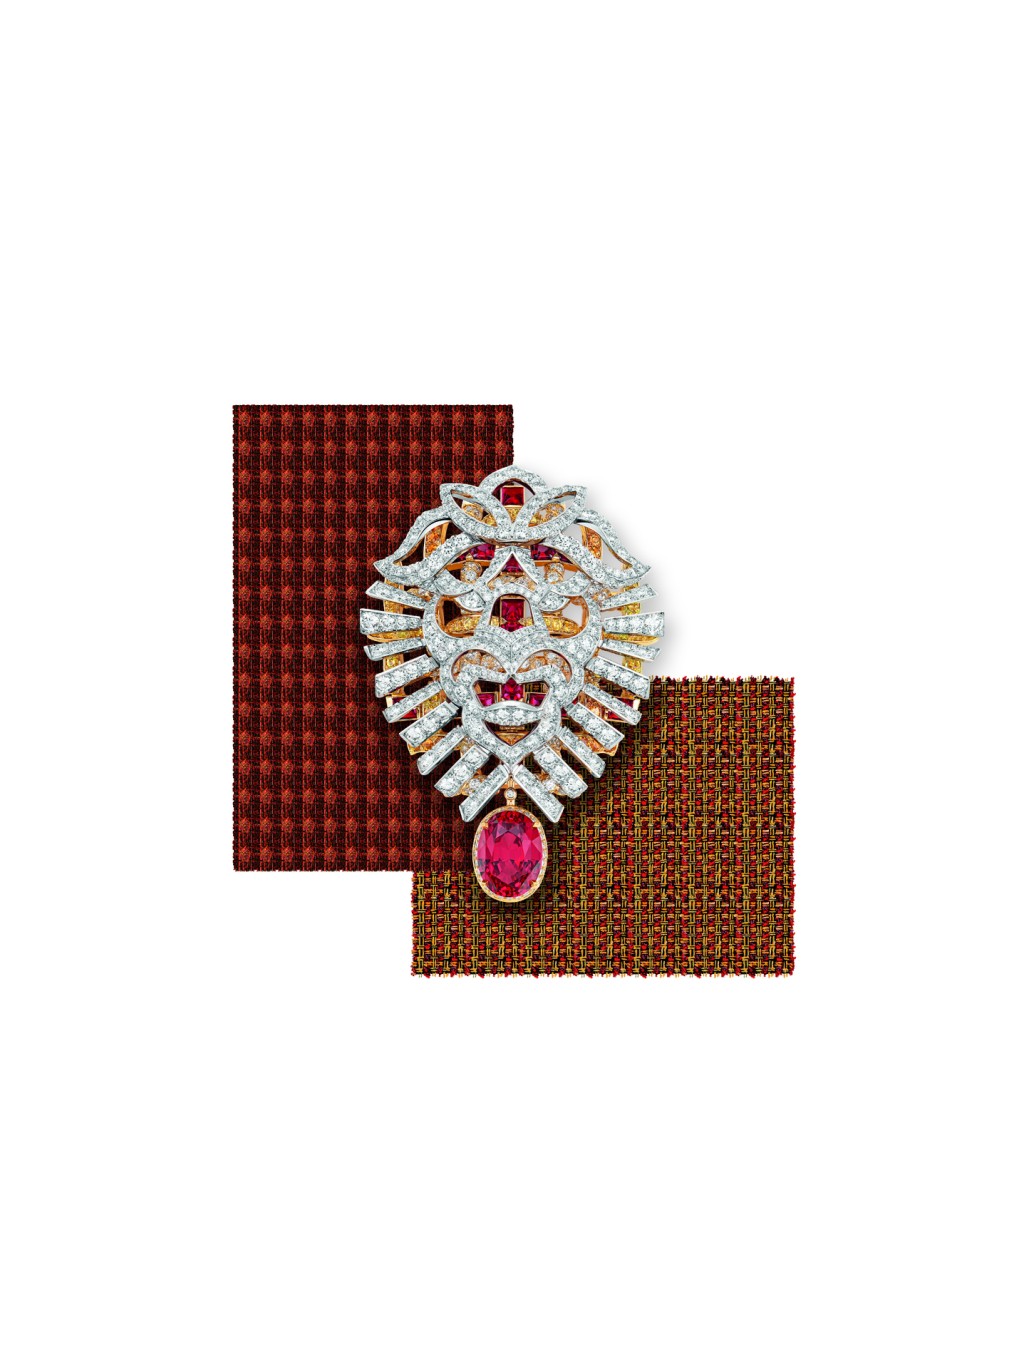 Tweed Lion白金及黄金钻石胸针，镶嵌红宝石和锰铝榴石，单颗红色尖晶石重约9.13卡，狮首图腾可拆下搭配在链节上。